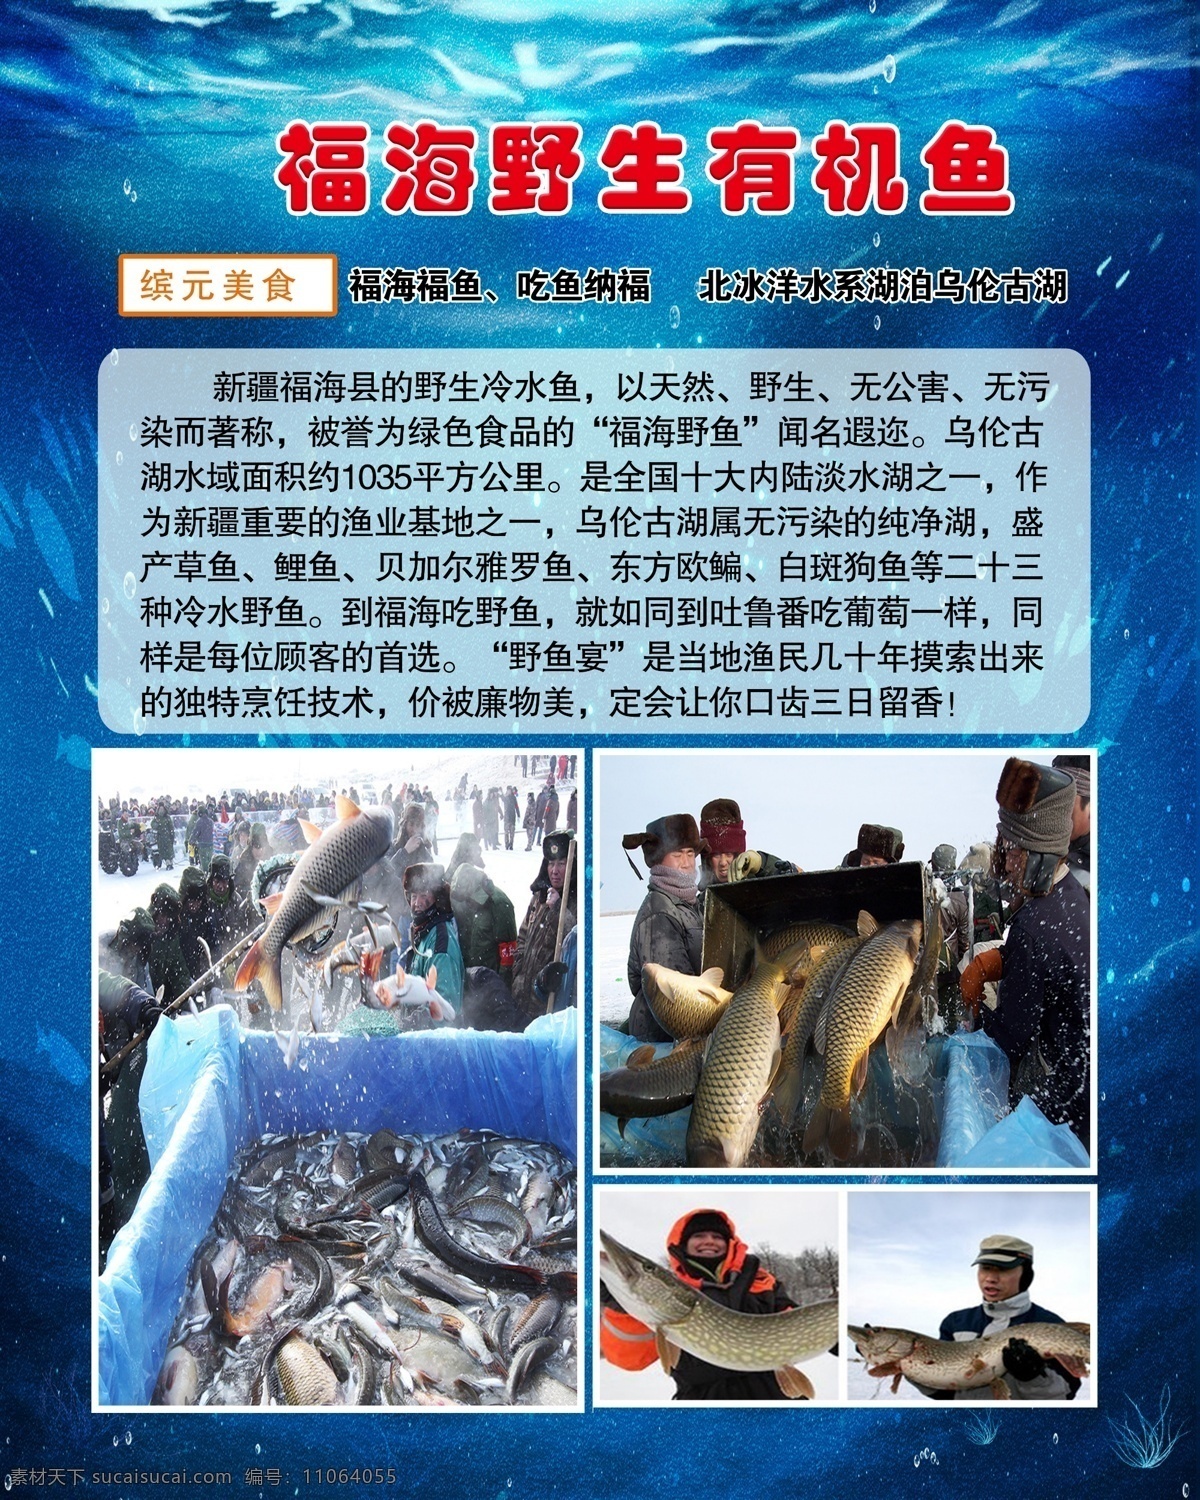 野生鱼介绍 福海野生鱼 野生鱼 介绍 有机鱼 美食